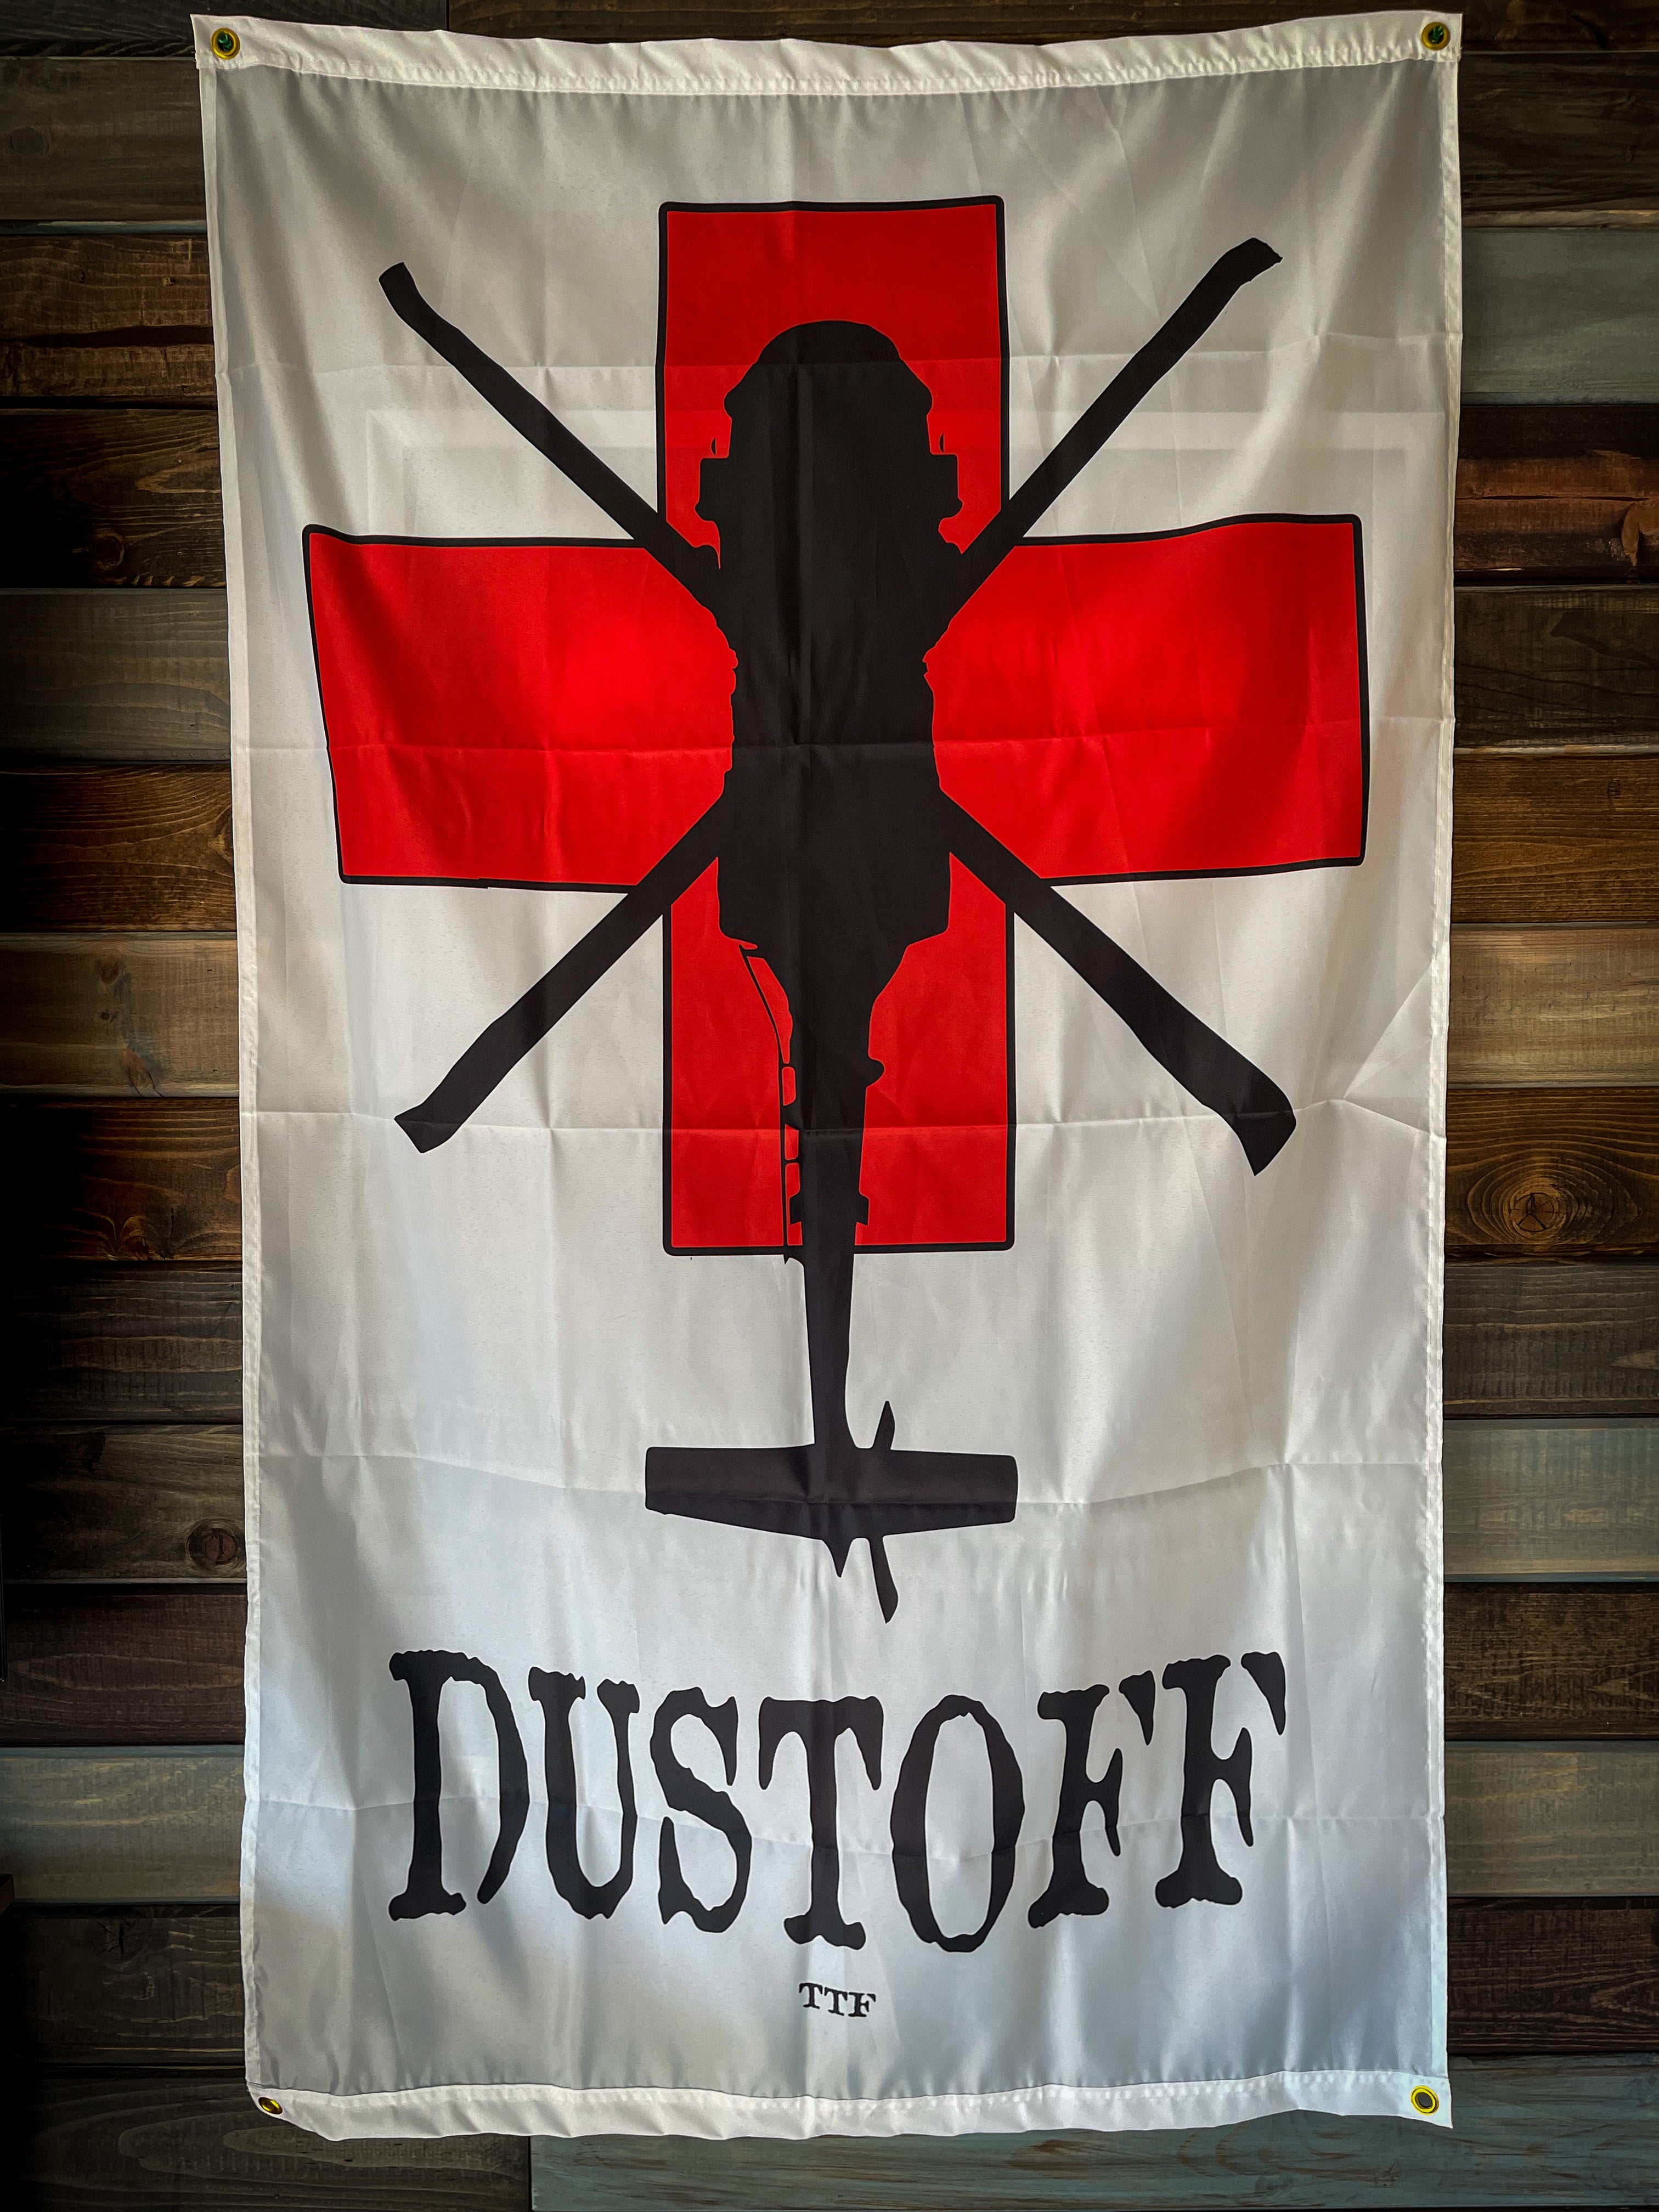 DUSTOFF V2 Flag